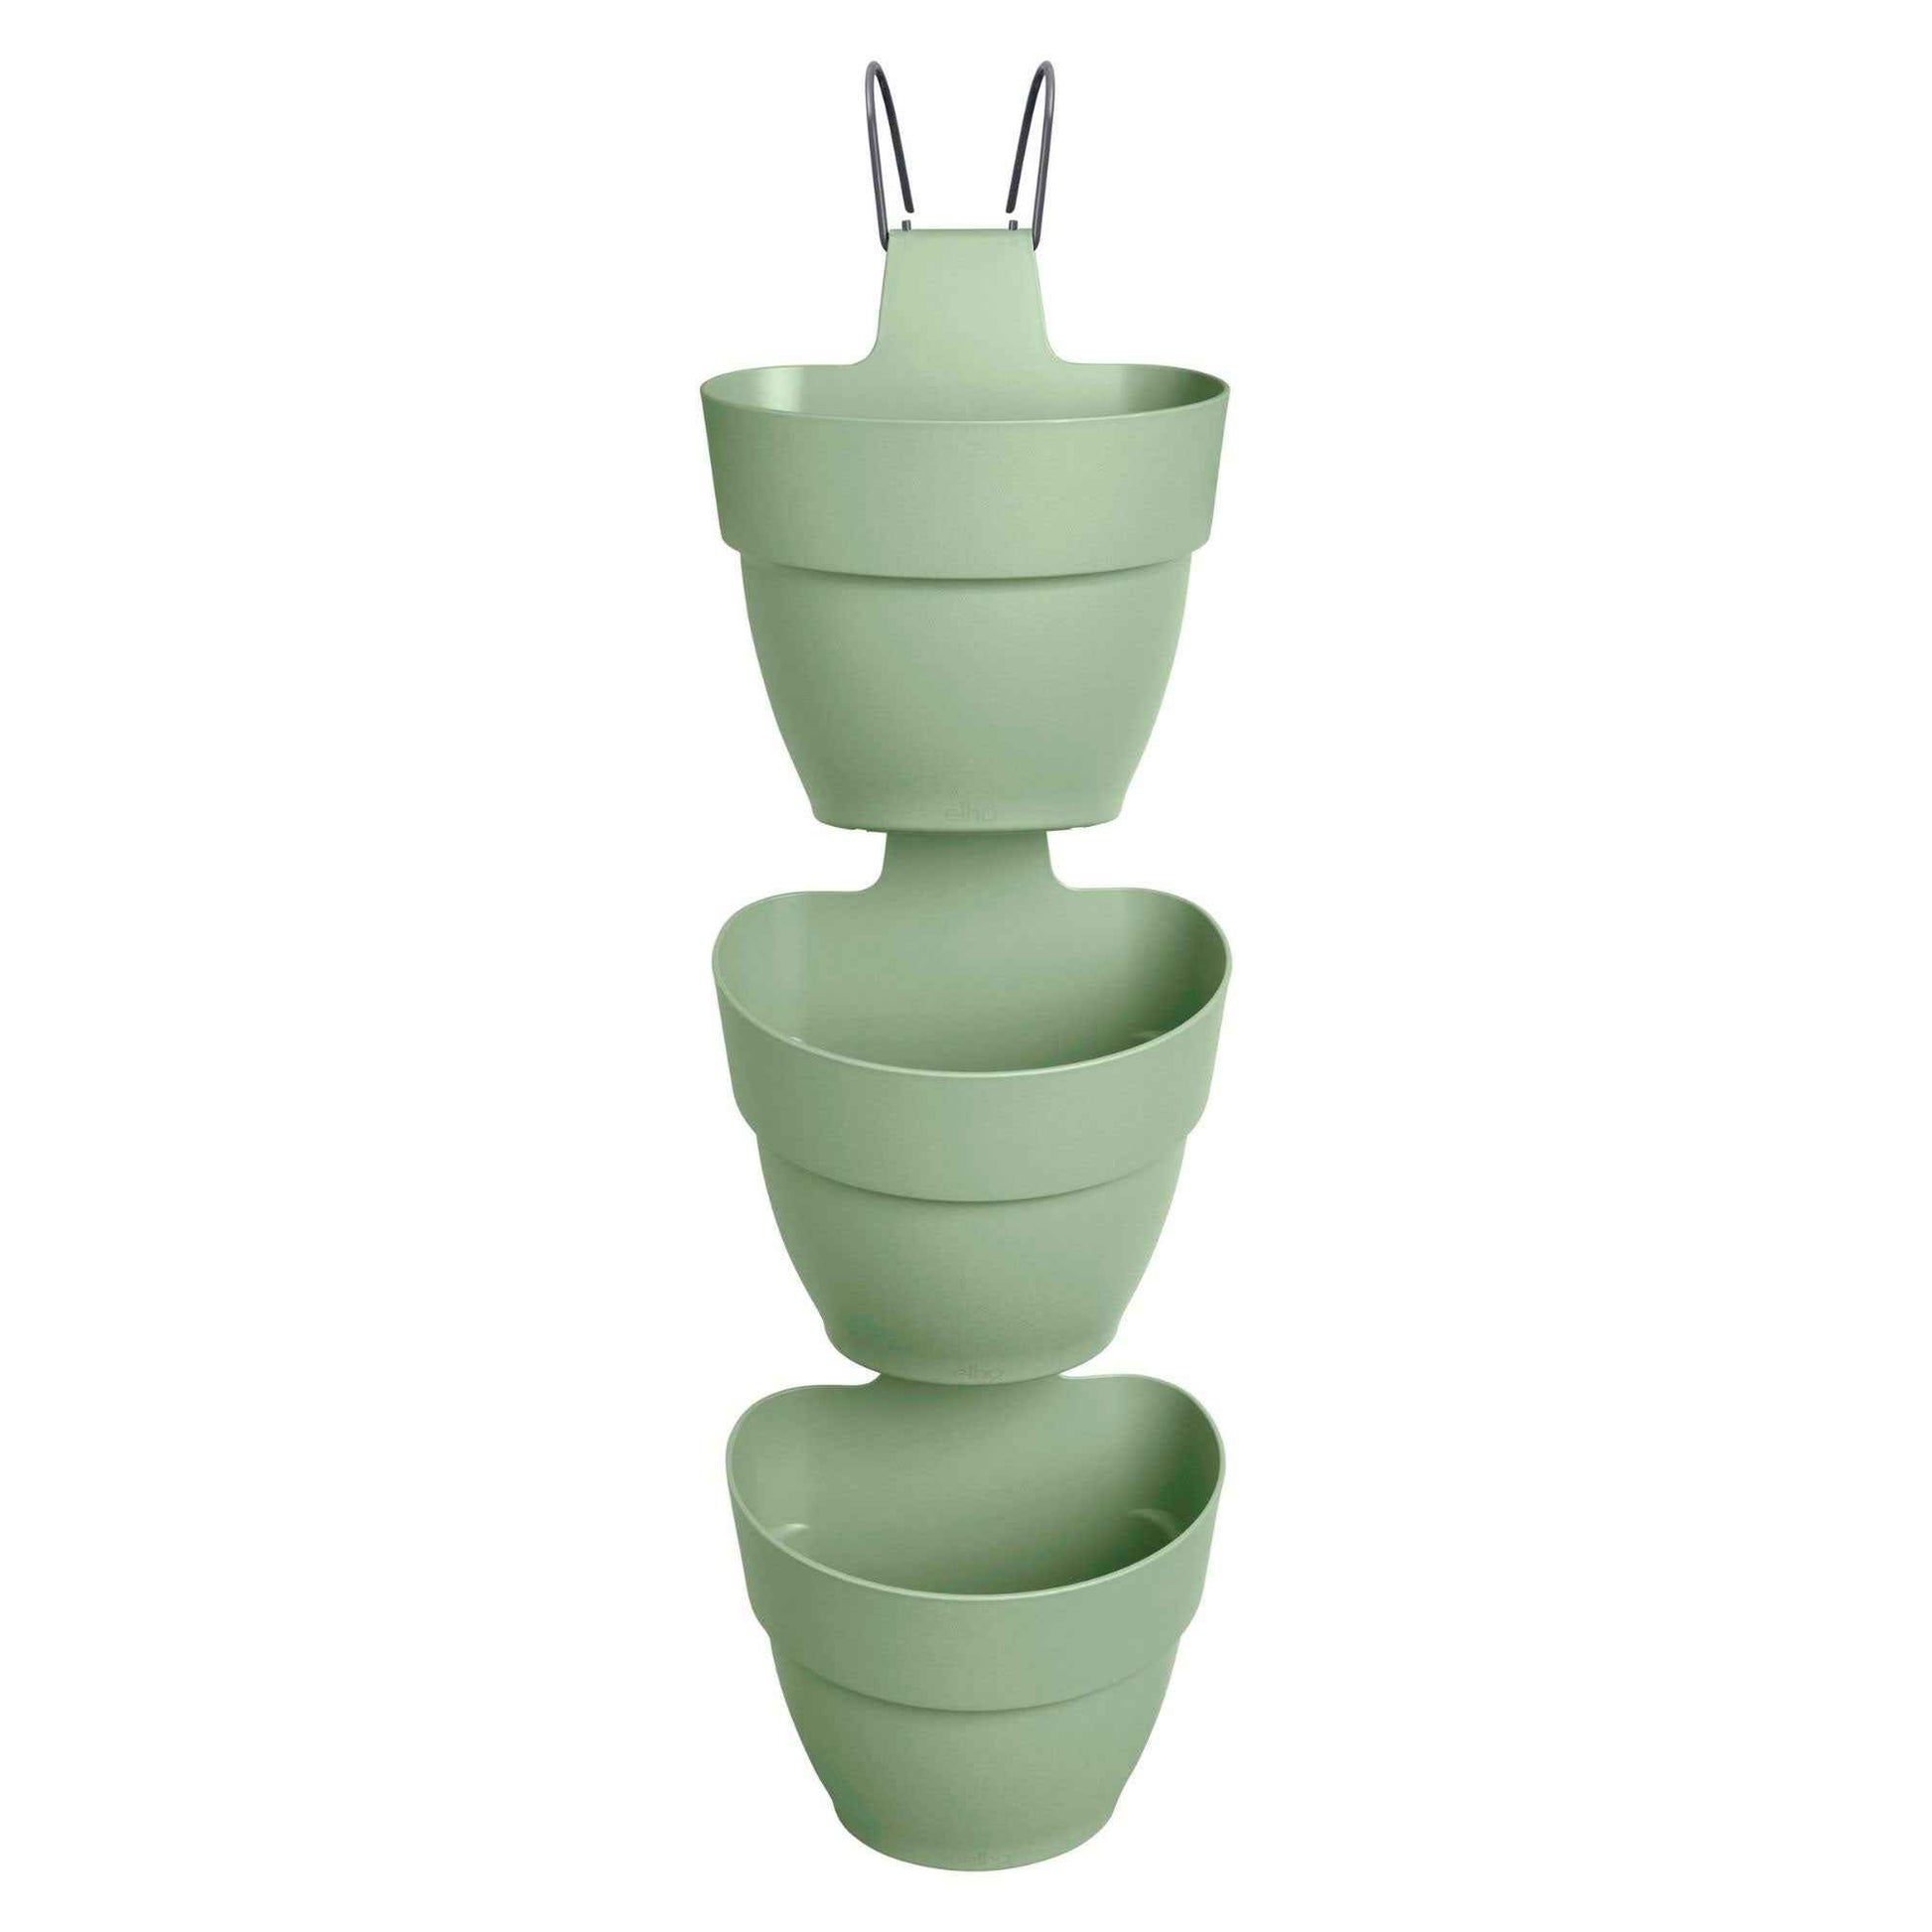 Elho Pot Vibia Campana rond pour jardin vertical - Pot pour l'extérieur Vert - Elho